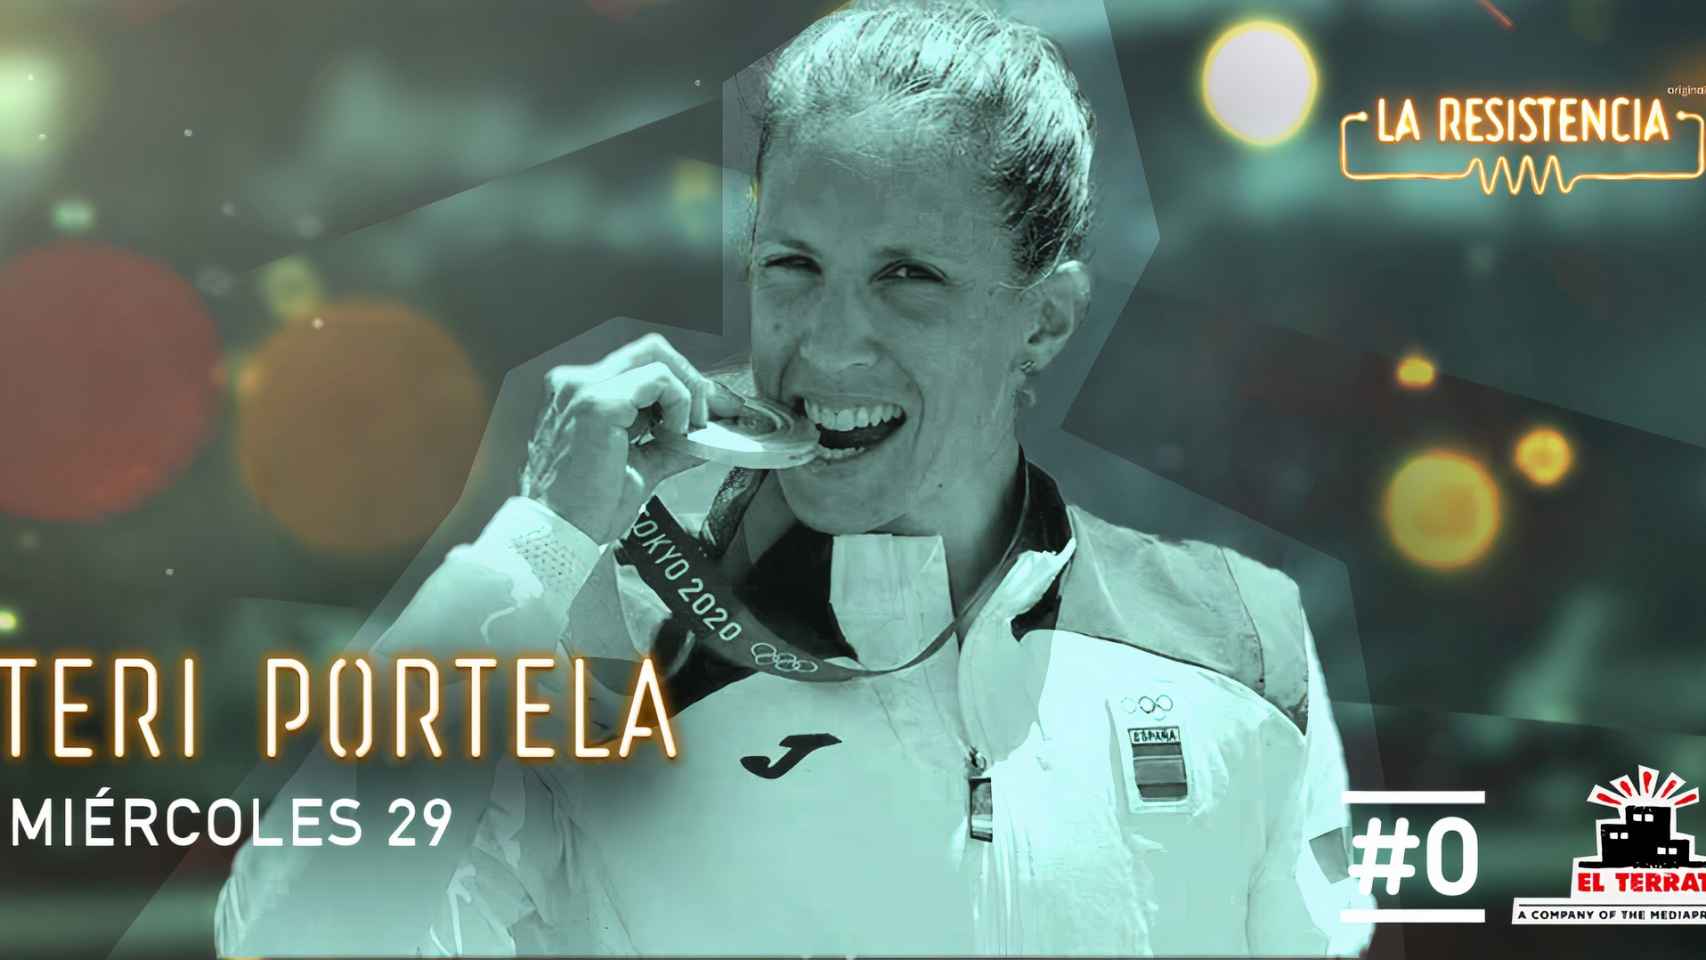 La gallega Teresa Portela, una máquina absoluta estará esta noche en La Resistencia